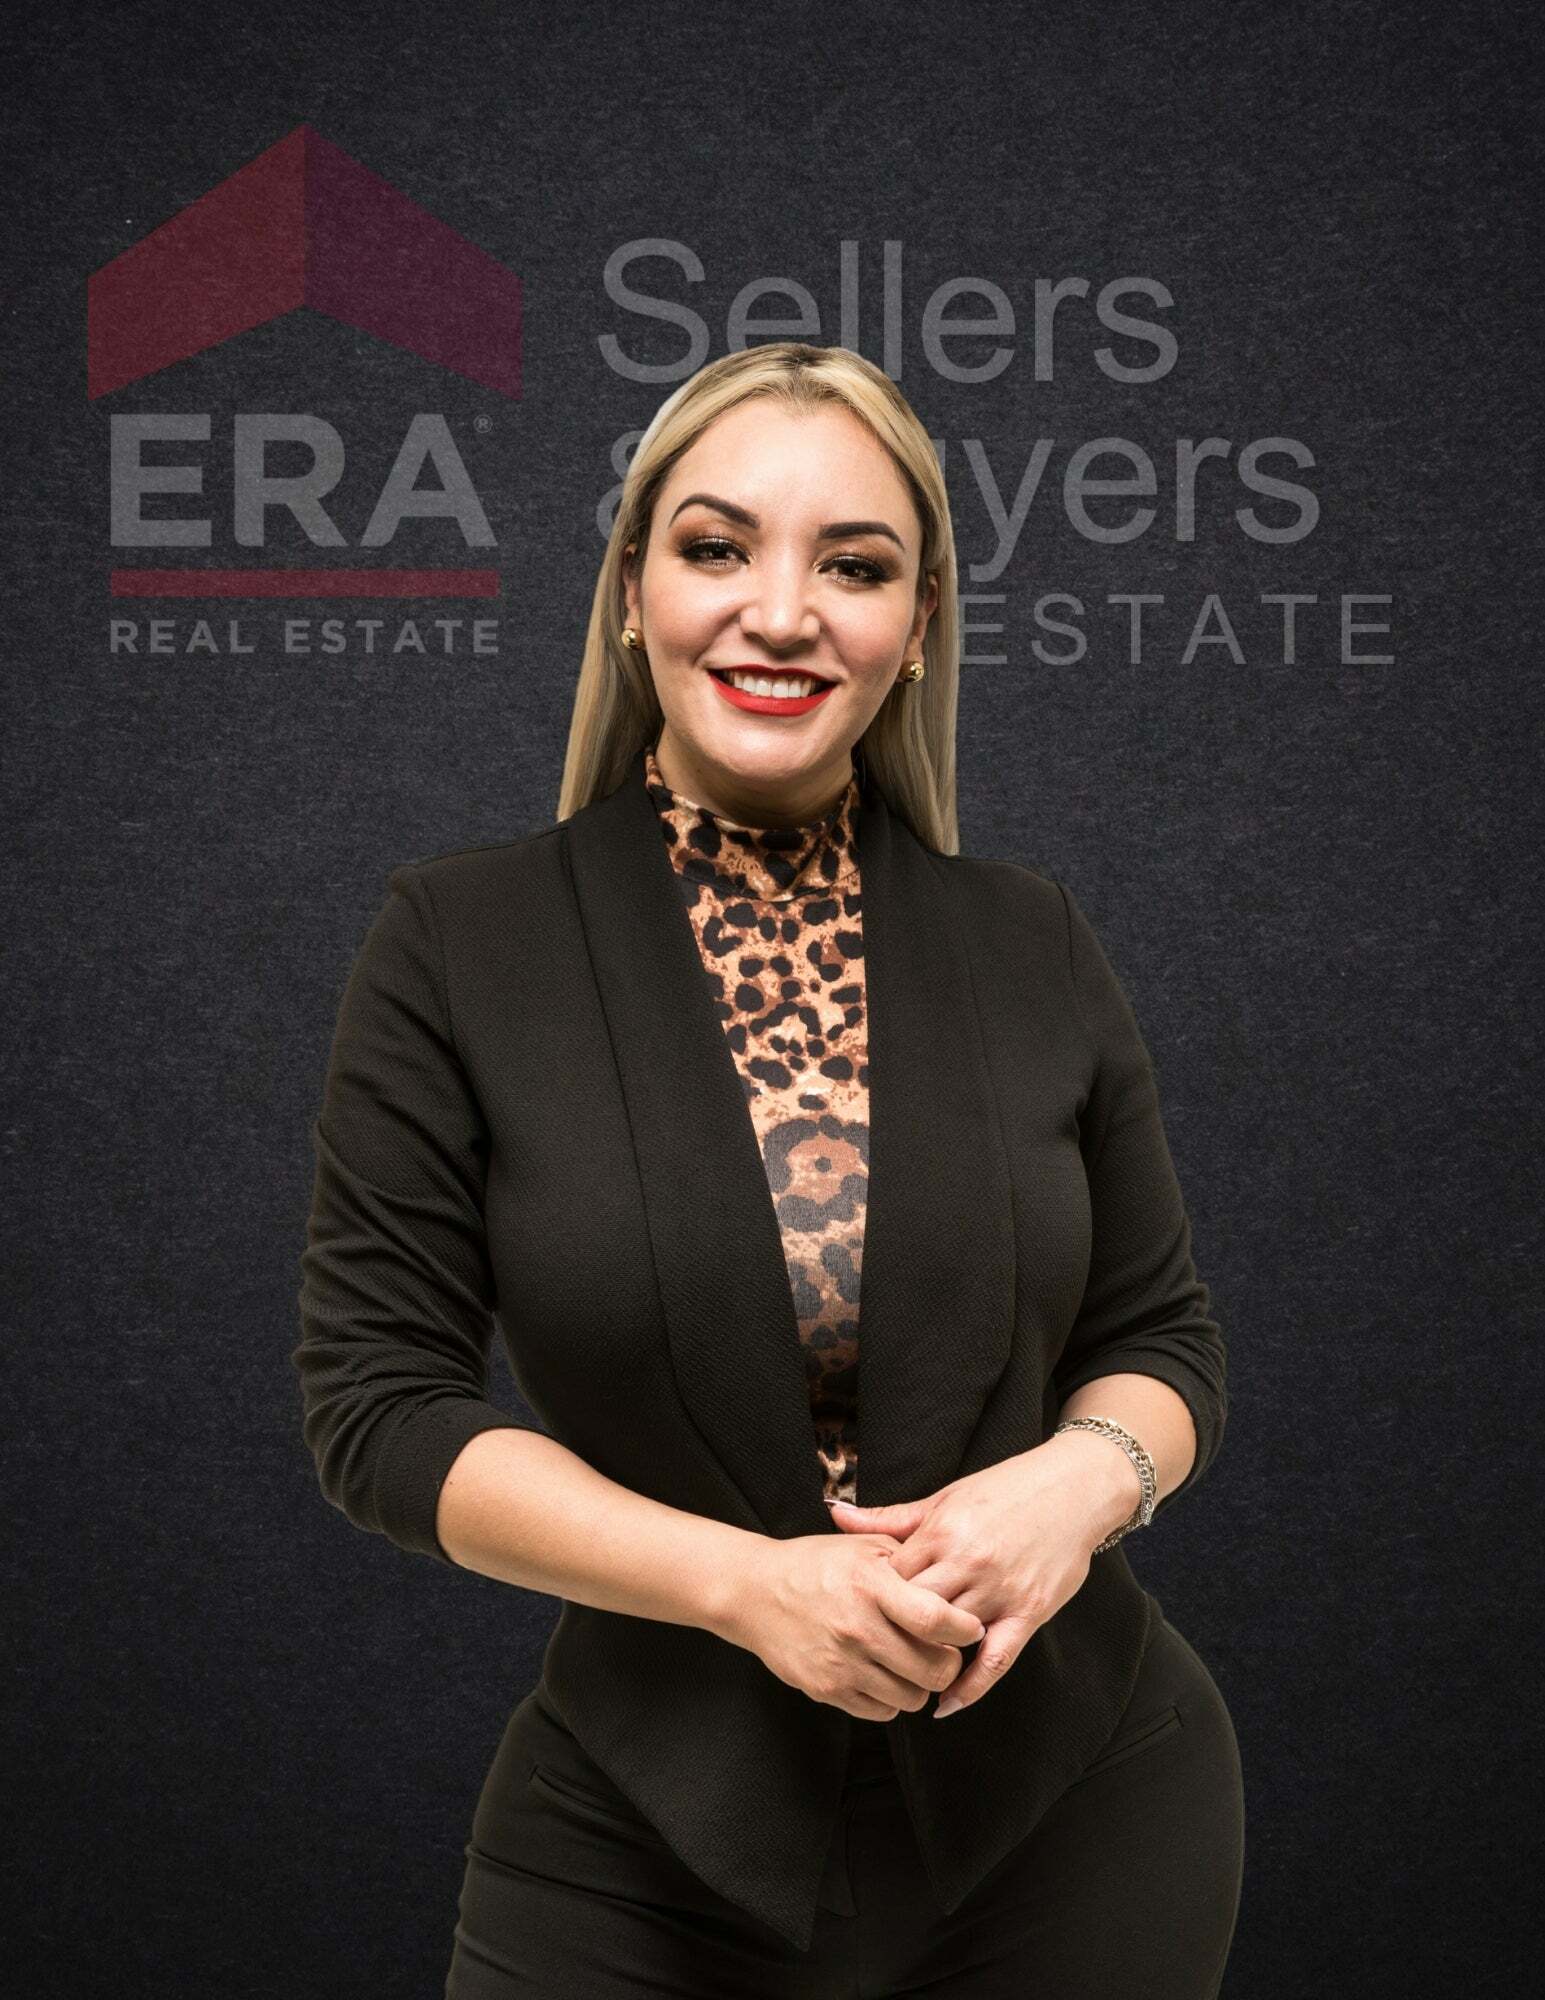 Gabriela Rios, Real Estate Salesperson in El Paso, ERA Sellers & Buyers Real Estate